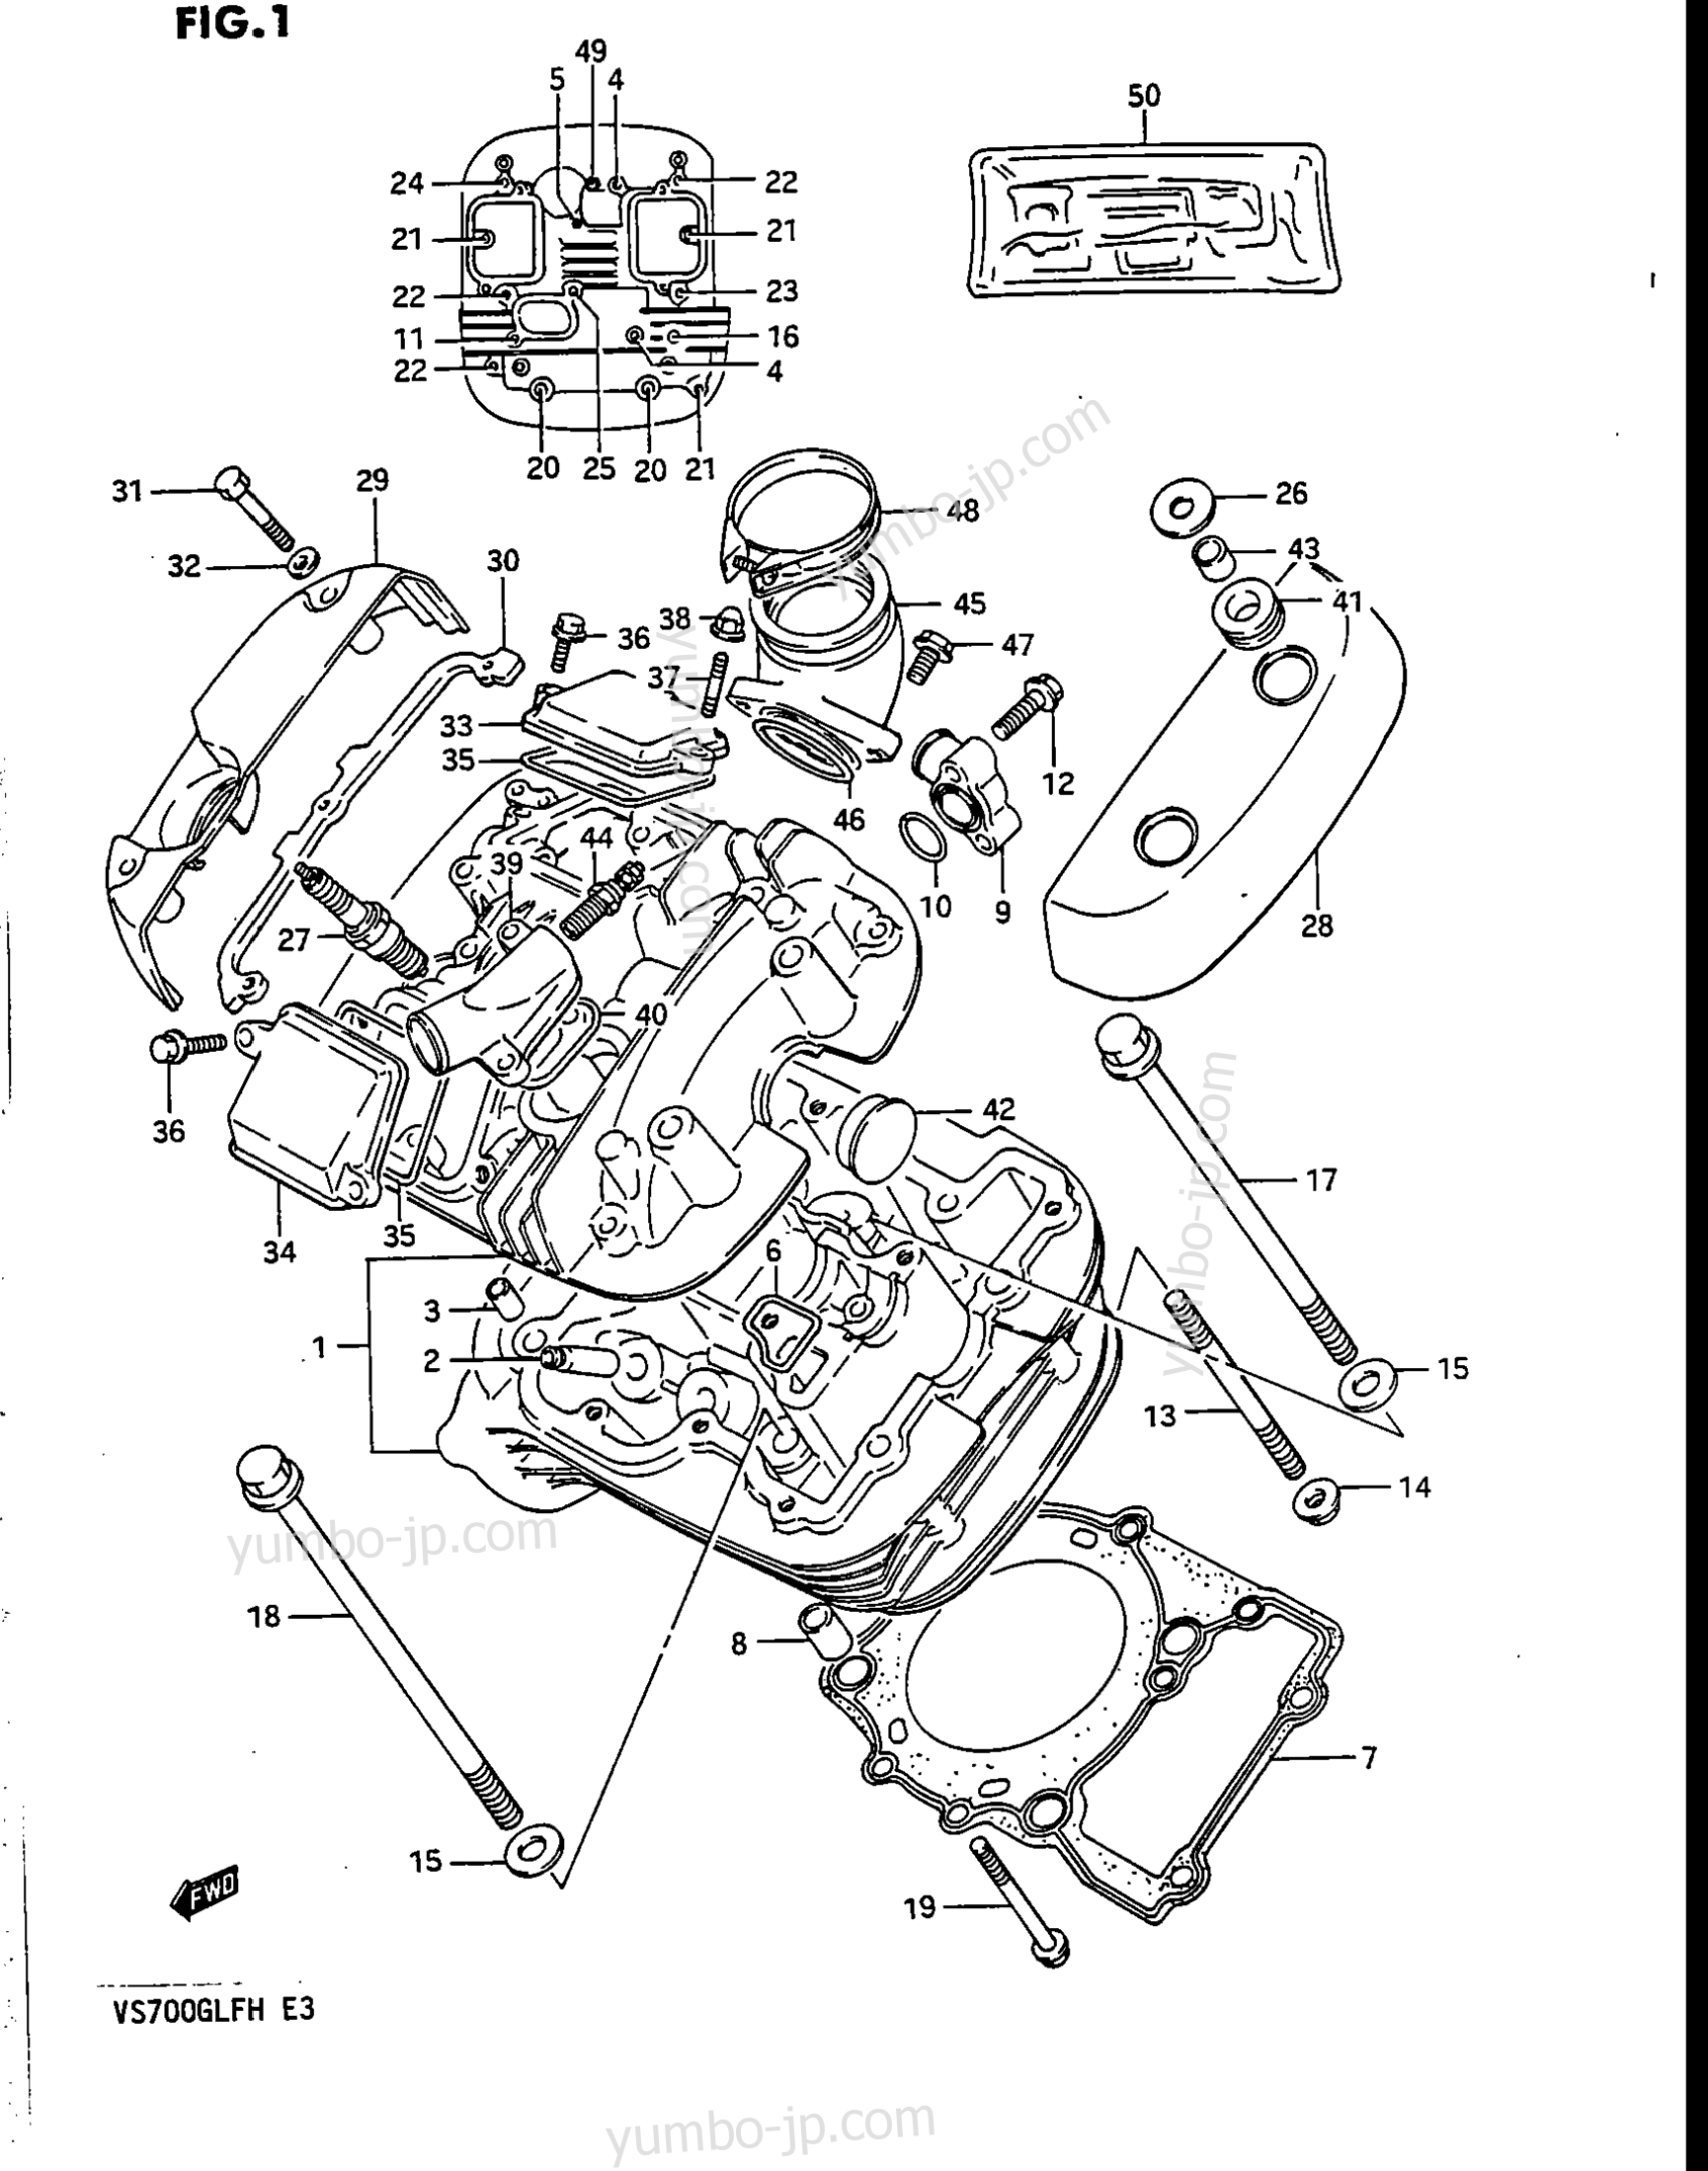 CYLINDER HEAD (FRONT) for motorcycles SUZUKI Intruder (VS700GLP) 1986 year